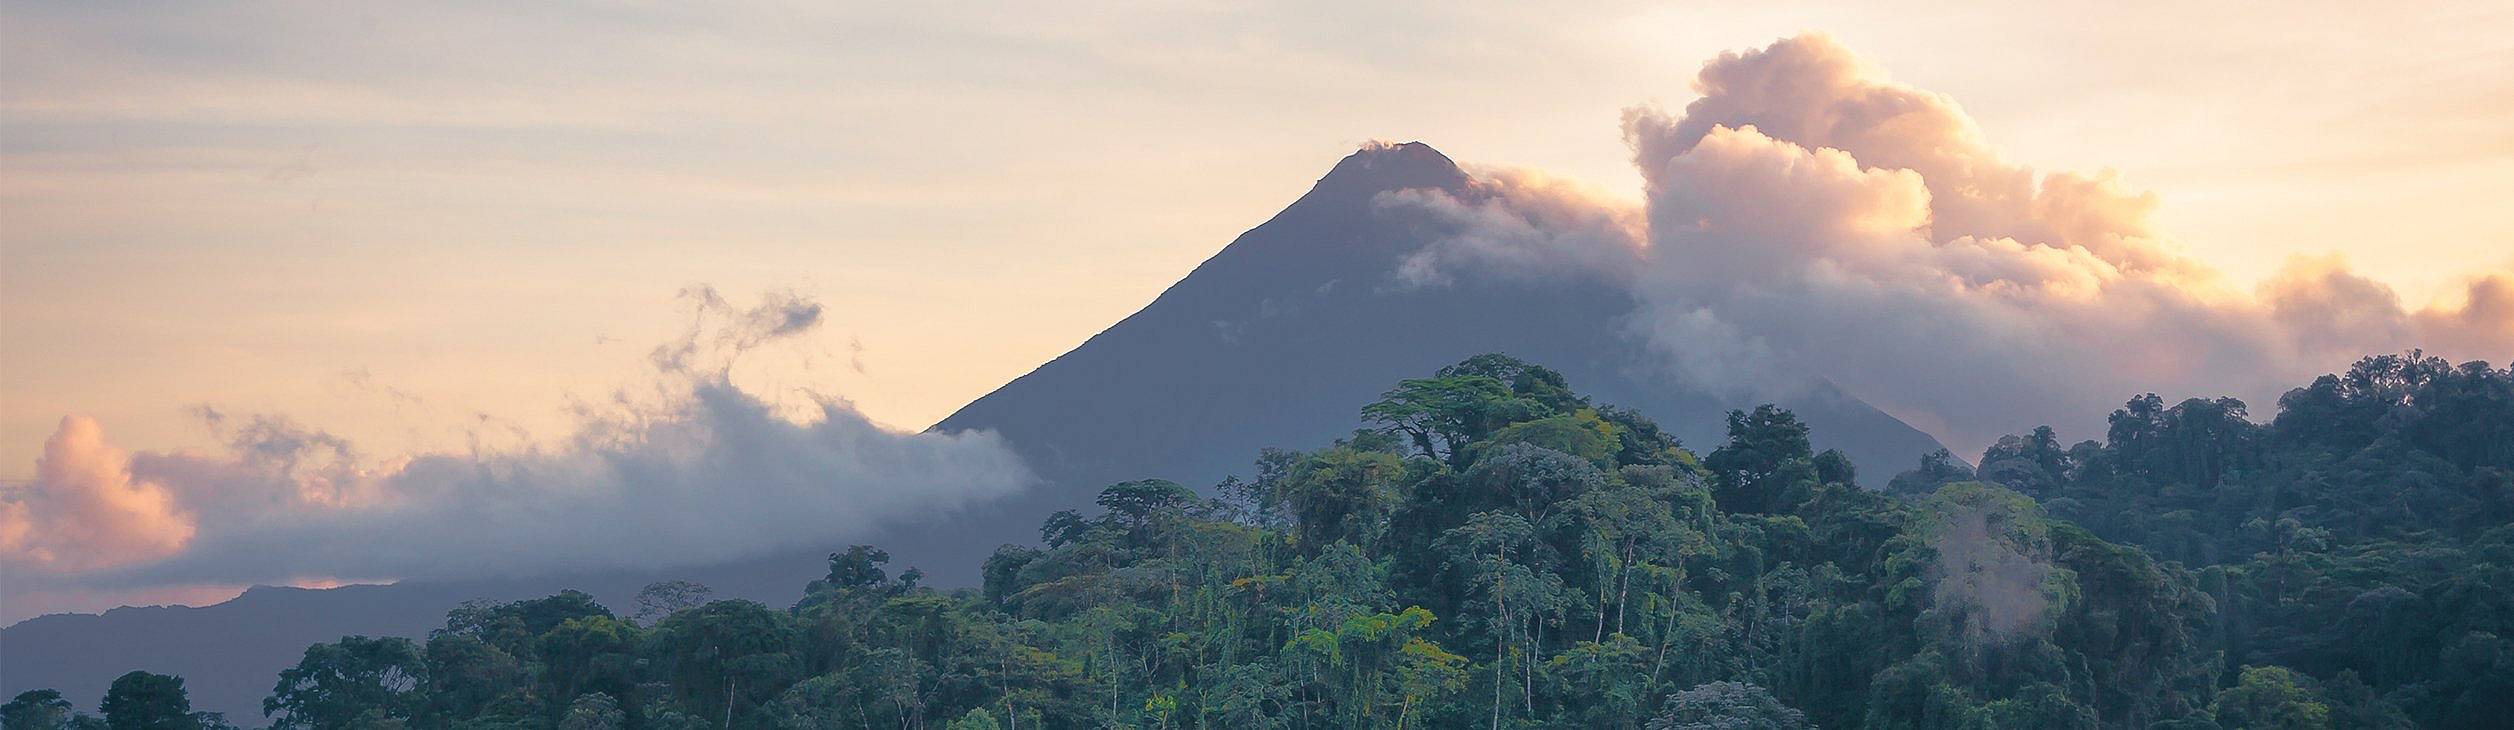 Crea tu viaje a Costa Rica en primavera 100% a medida